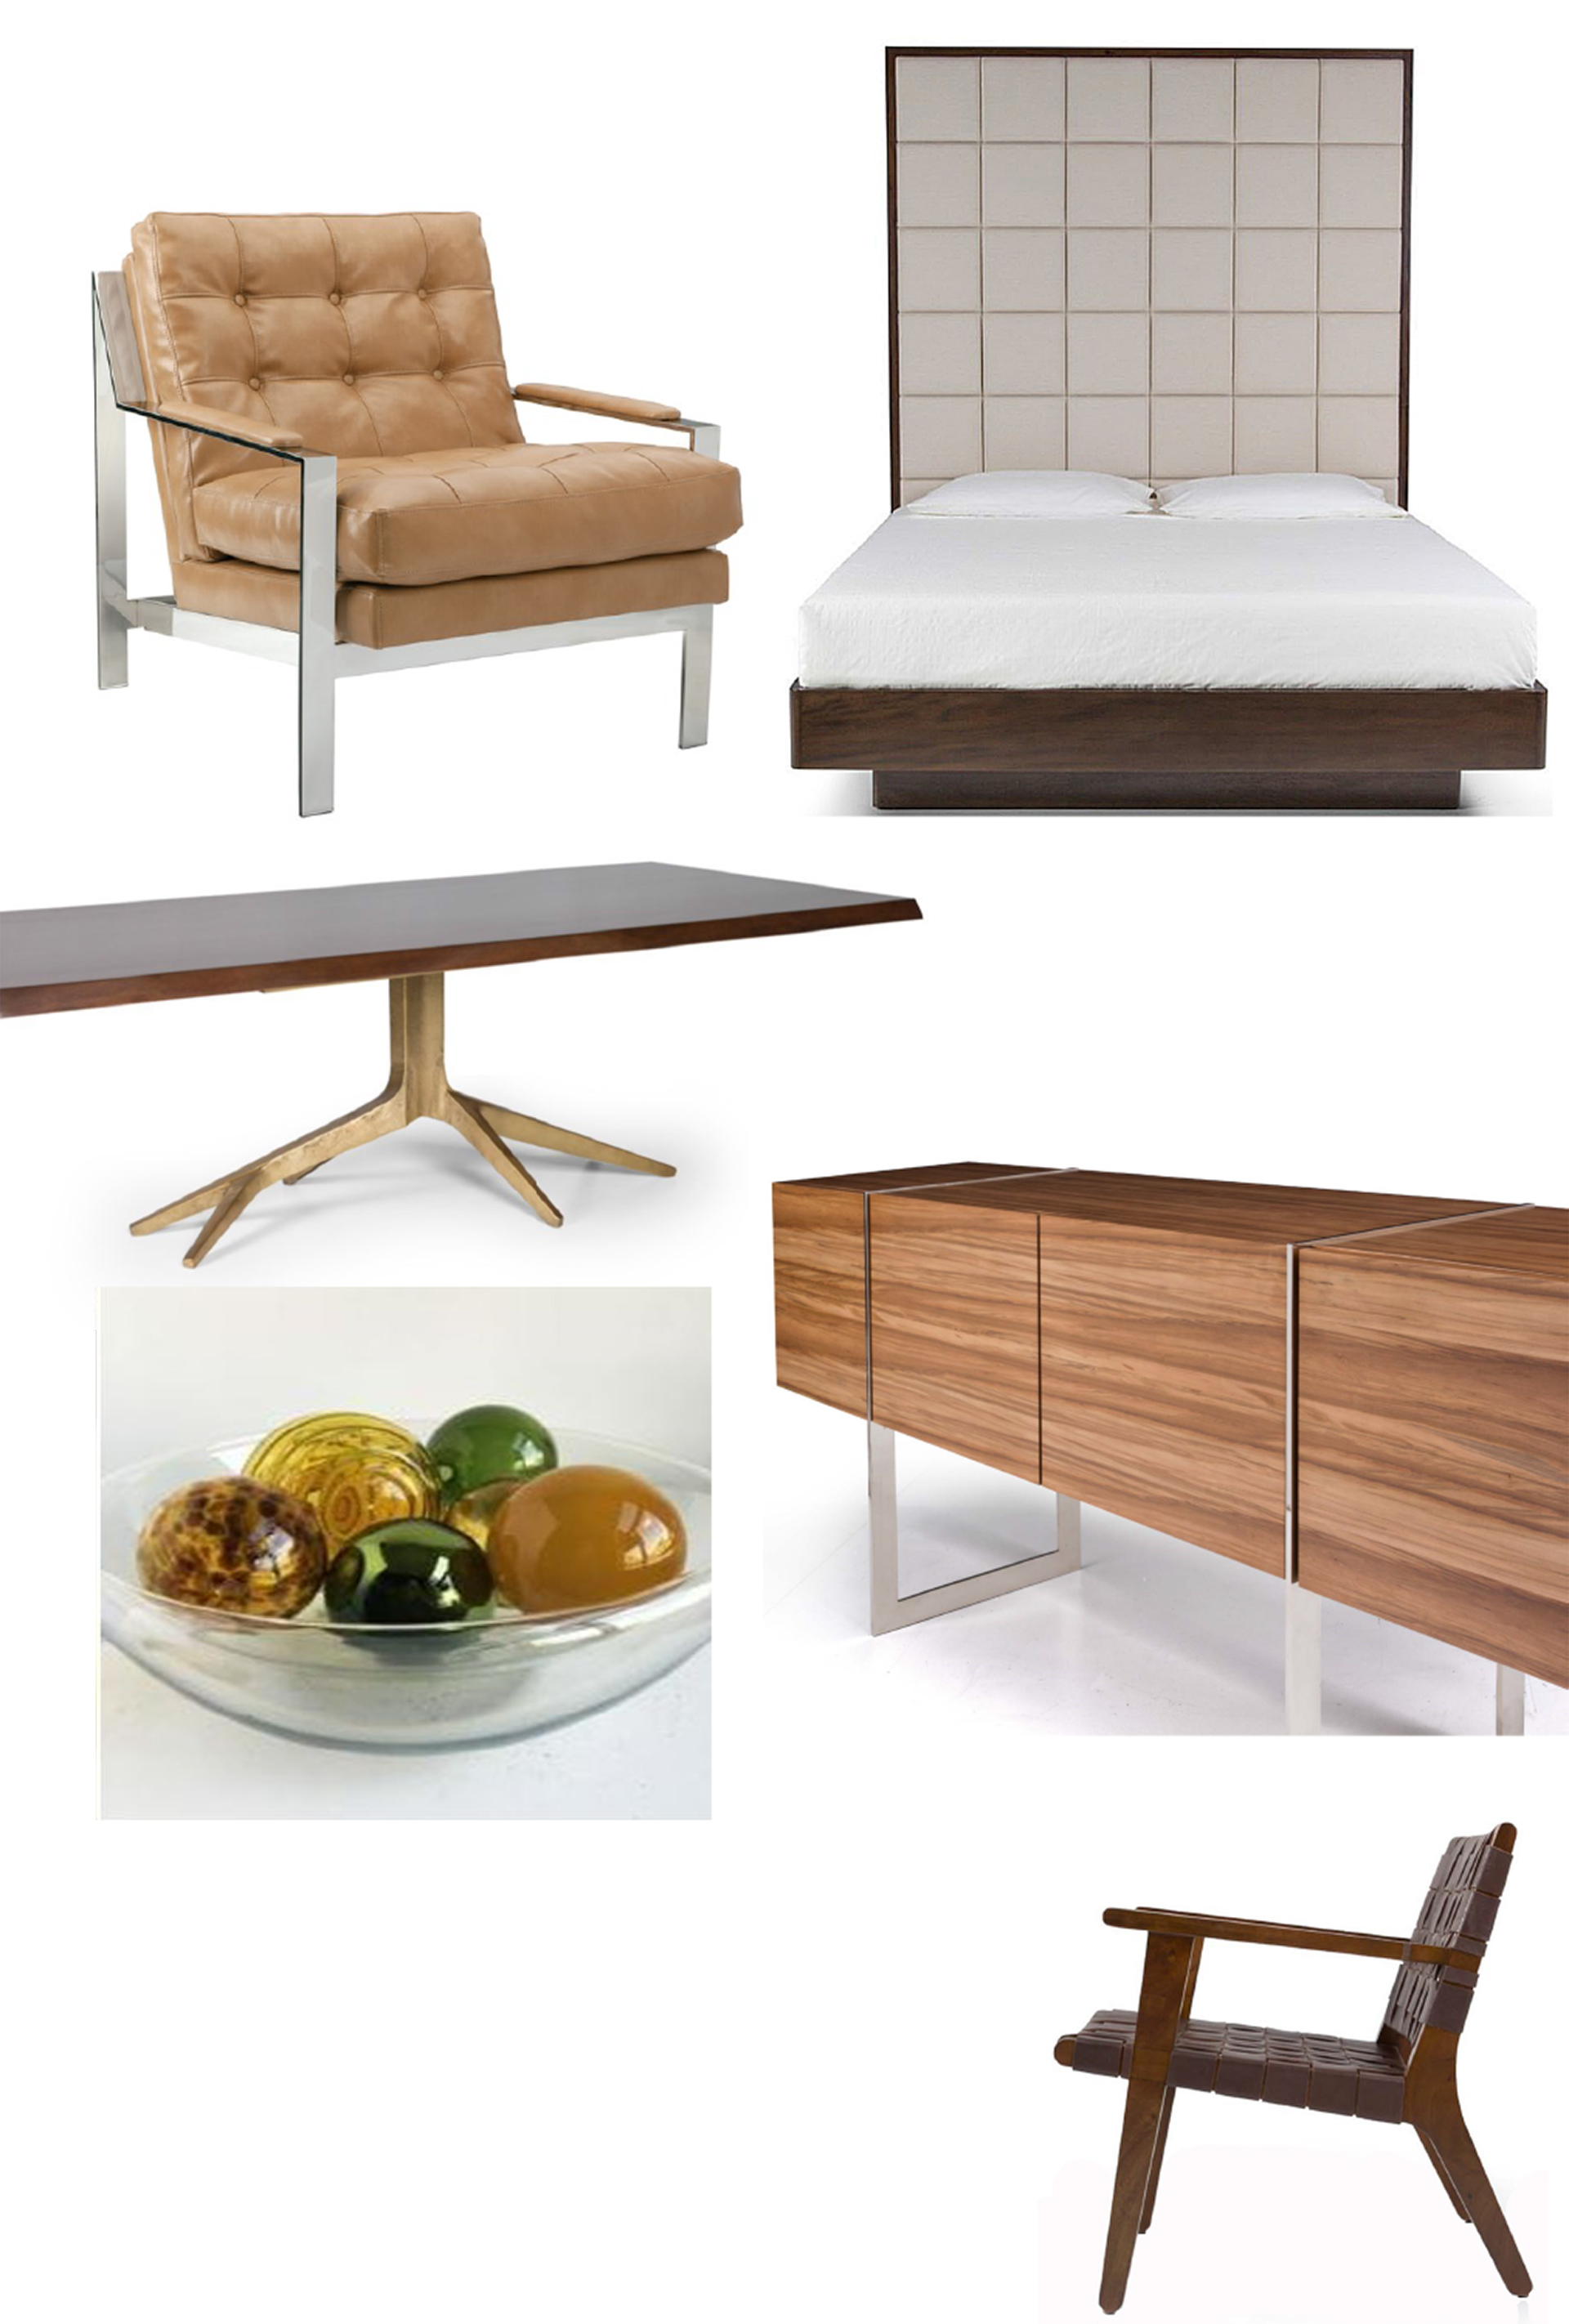 modern-furniture-image